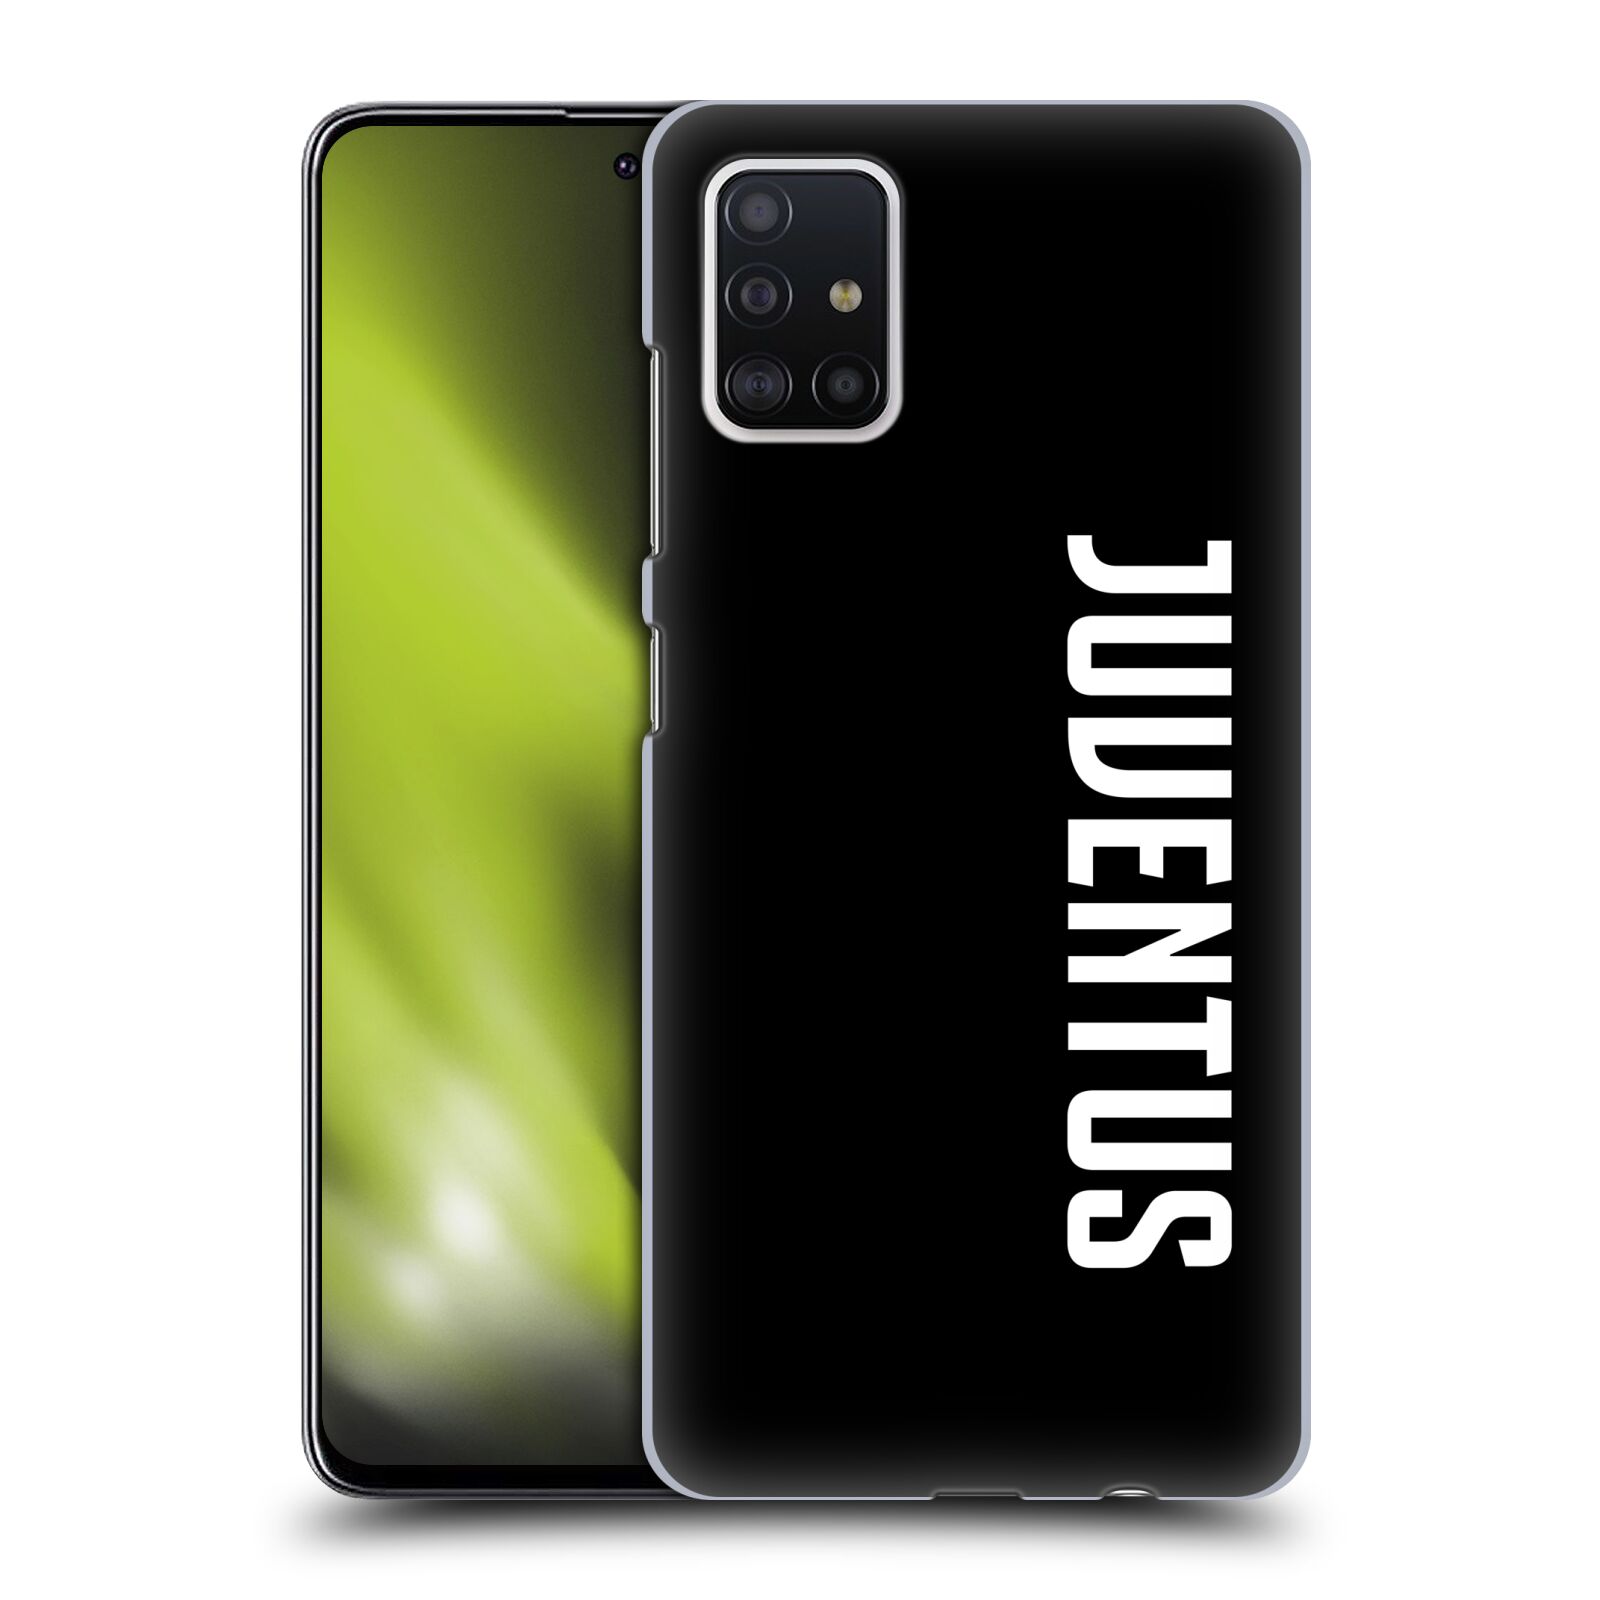 Pouzdro na mobil Samsung Galaxy A51 - HEAD CASE - Fotbalový klub Juventus FC černé pozadí velký bílý nápis